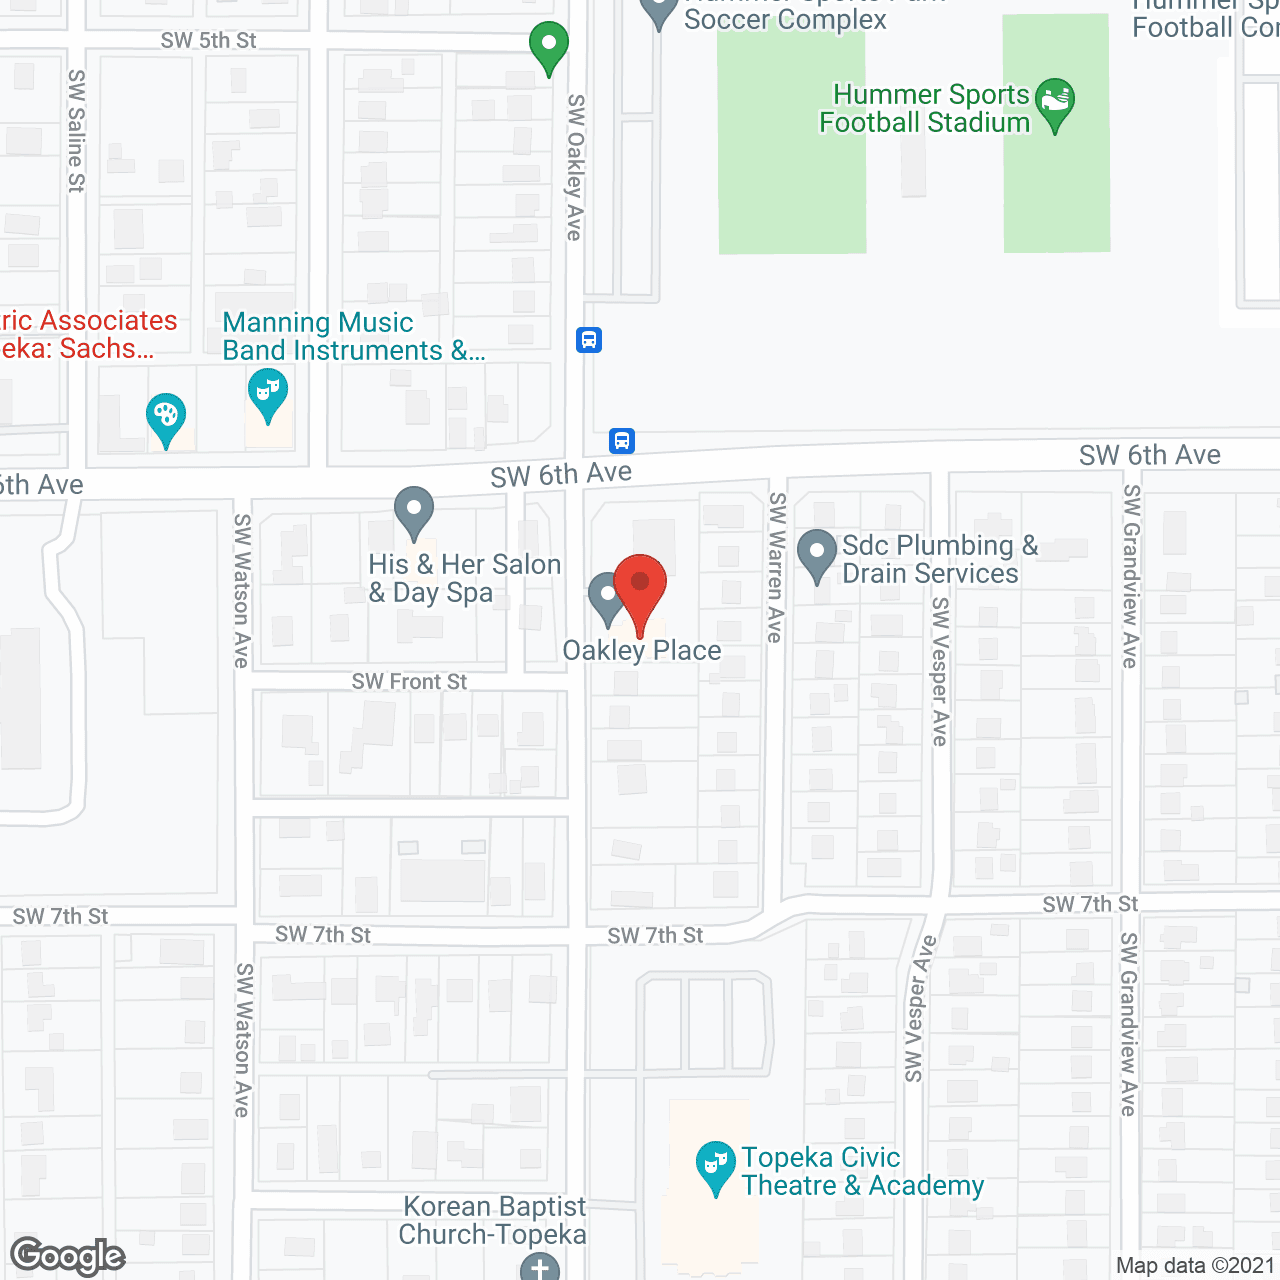 Oakley Place, LLC in google map